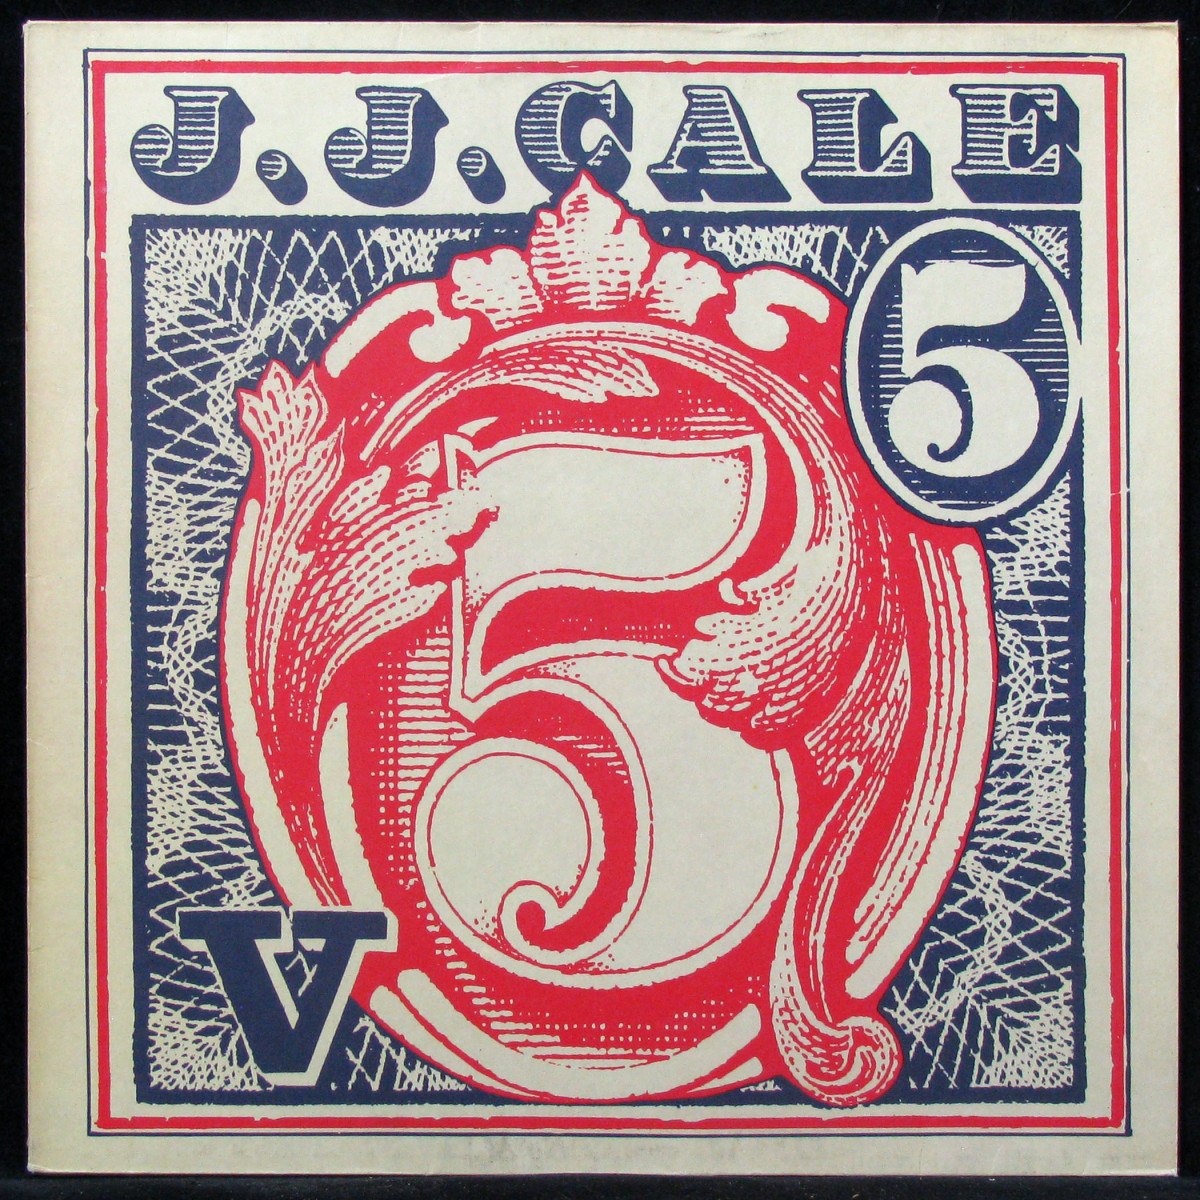 LP J.J. Cale — 5 фото